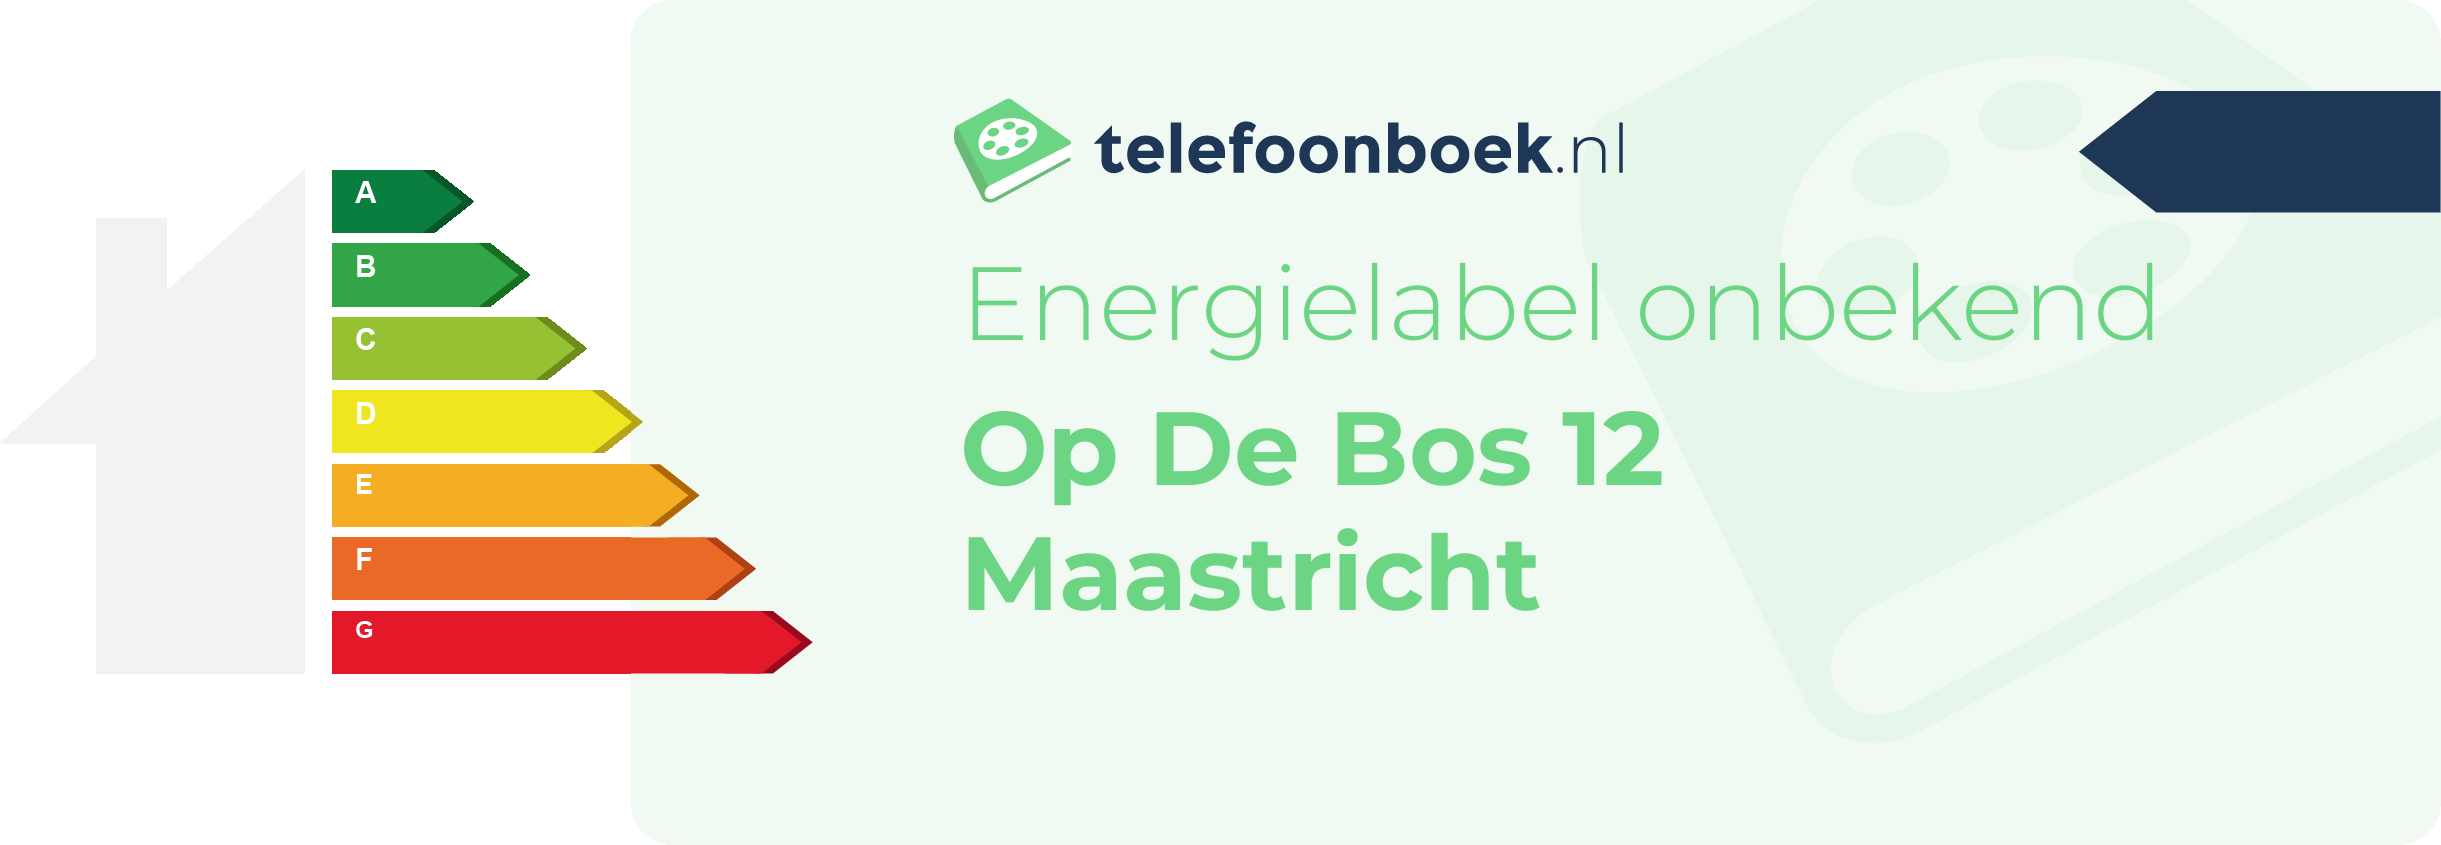 Energielabel Op De Bos 12 Maastricht